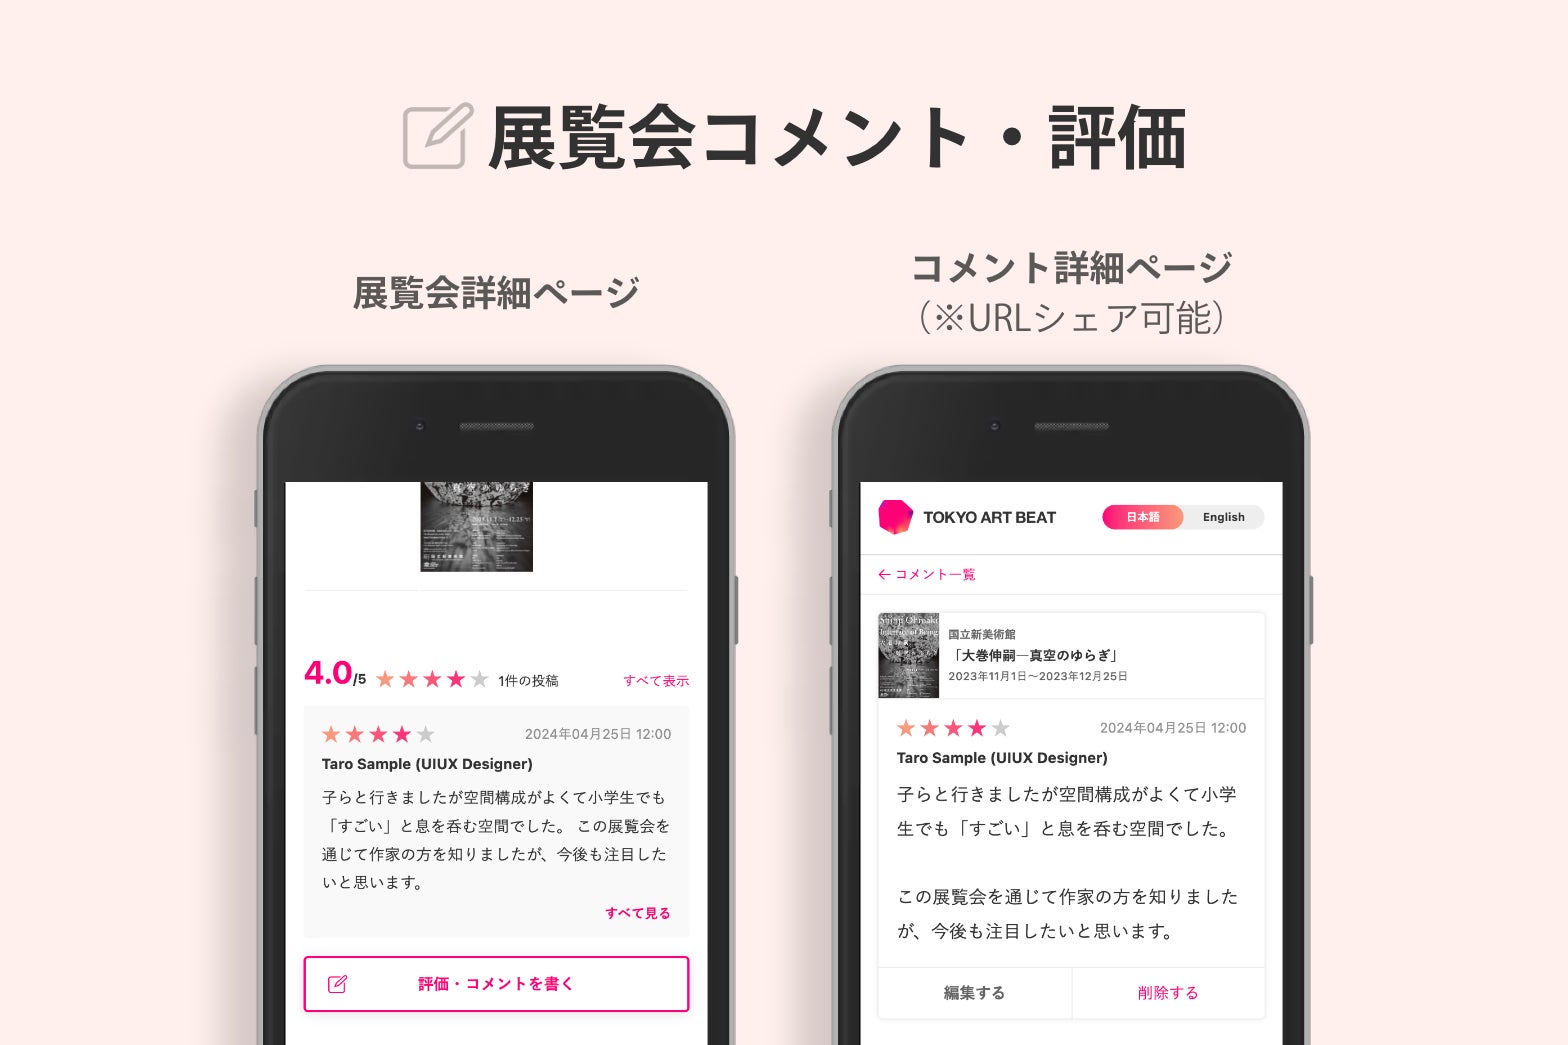 Tokyo Art Beatで展覧会の感想を共有しよう！ 新サービス「展覧会コメント・評価機能」をリリース